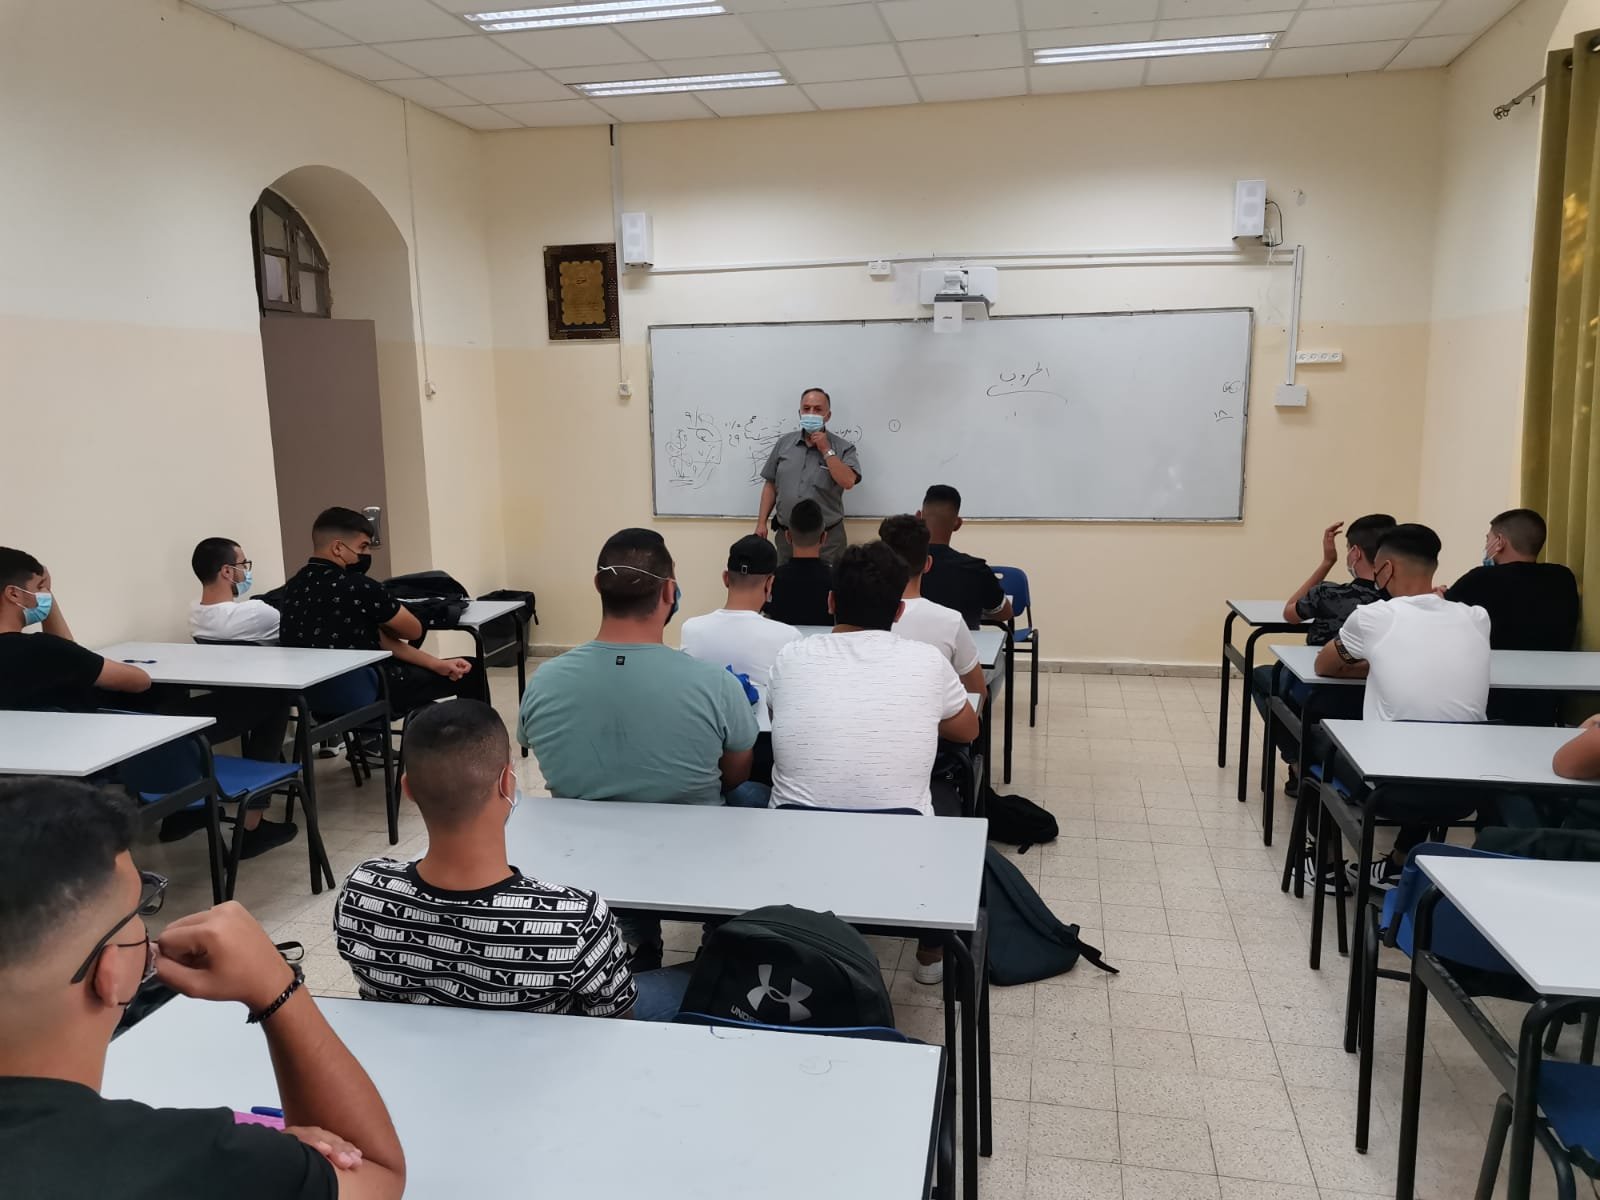 كيف افتتحت مدارس القدس العام الدراسيّ اليوم-1